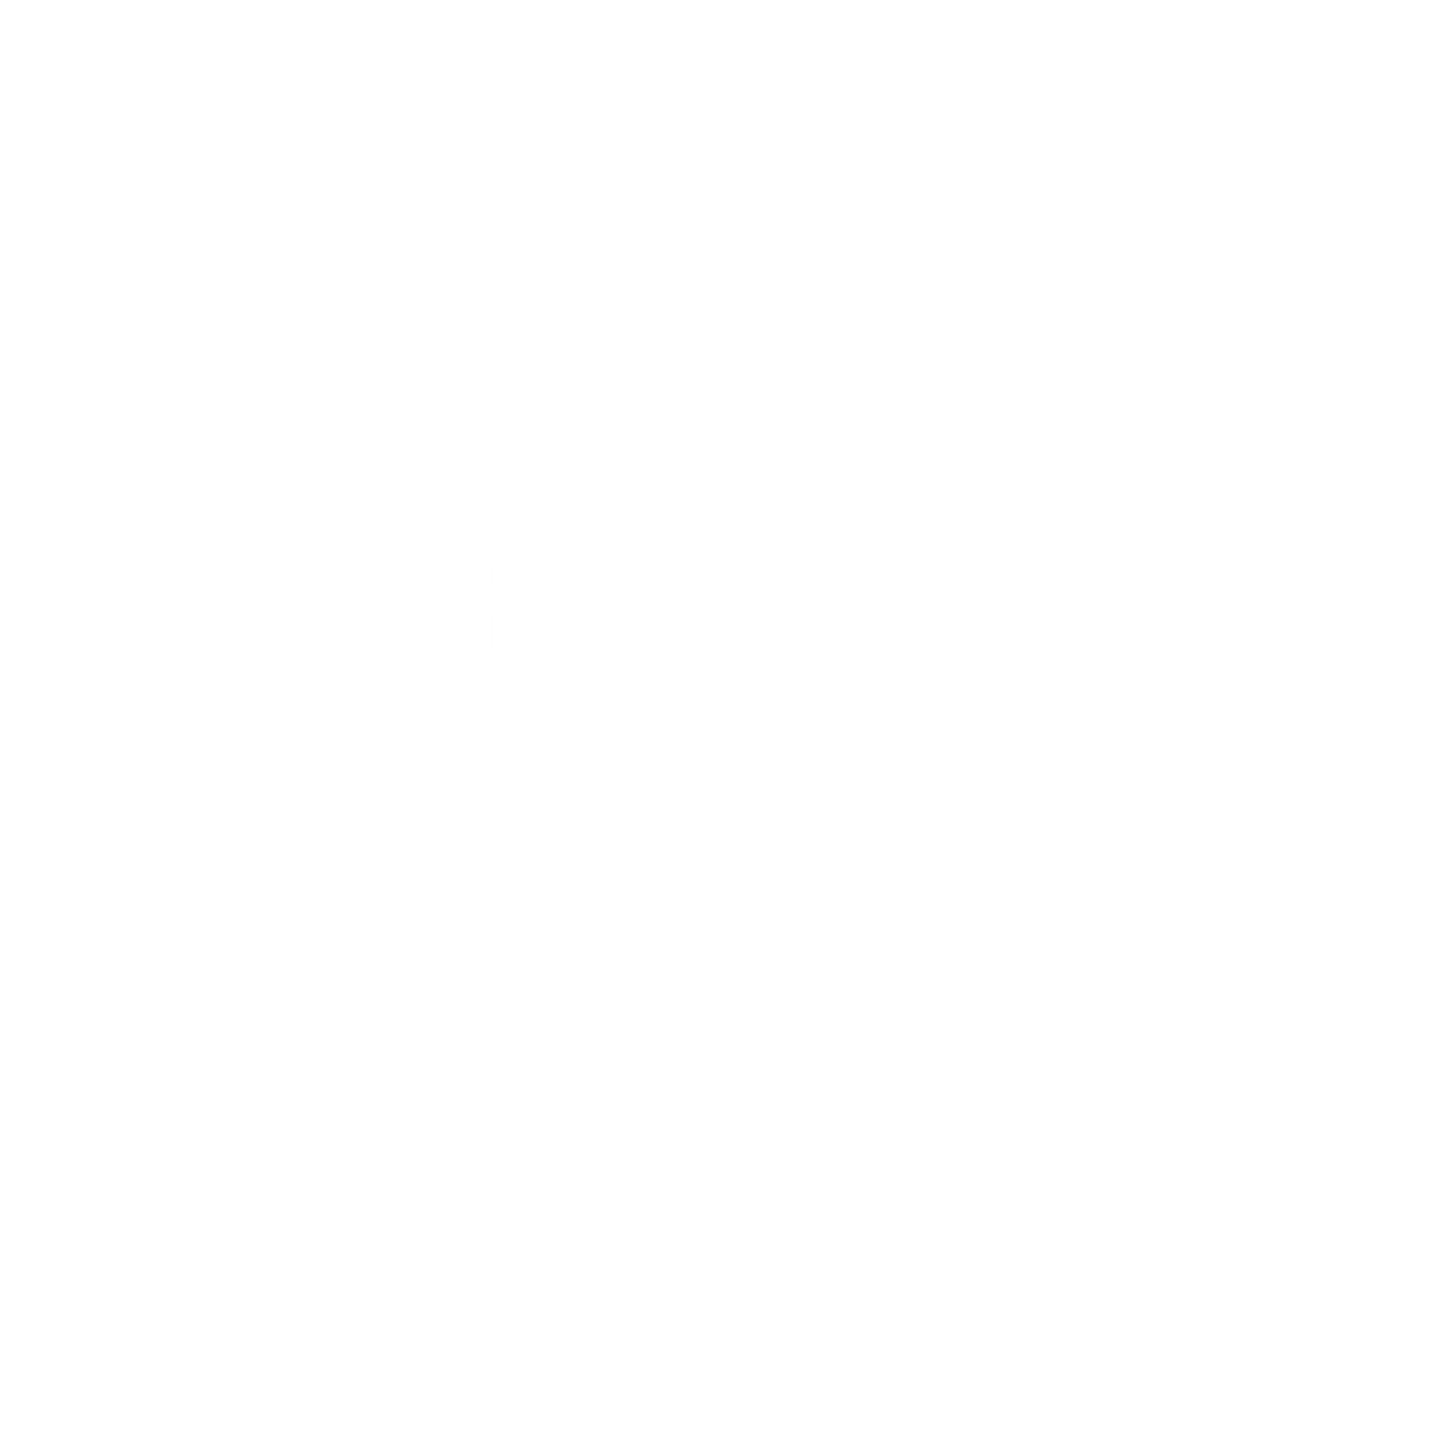 Zombie Response Team Kill Or Be Eaten, New